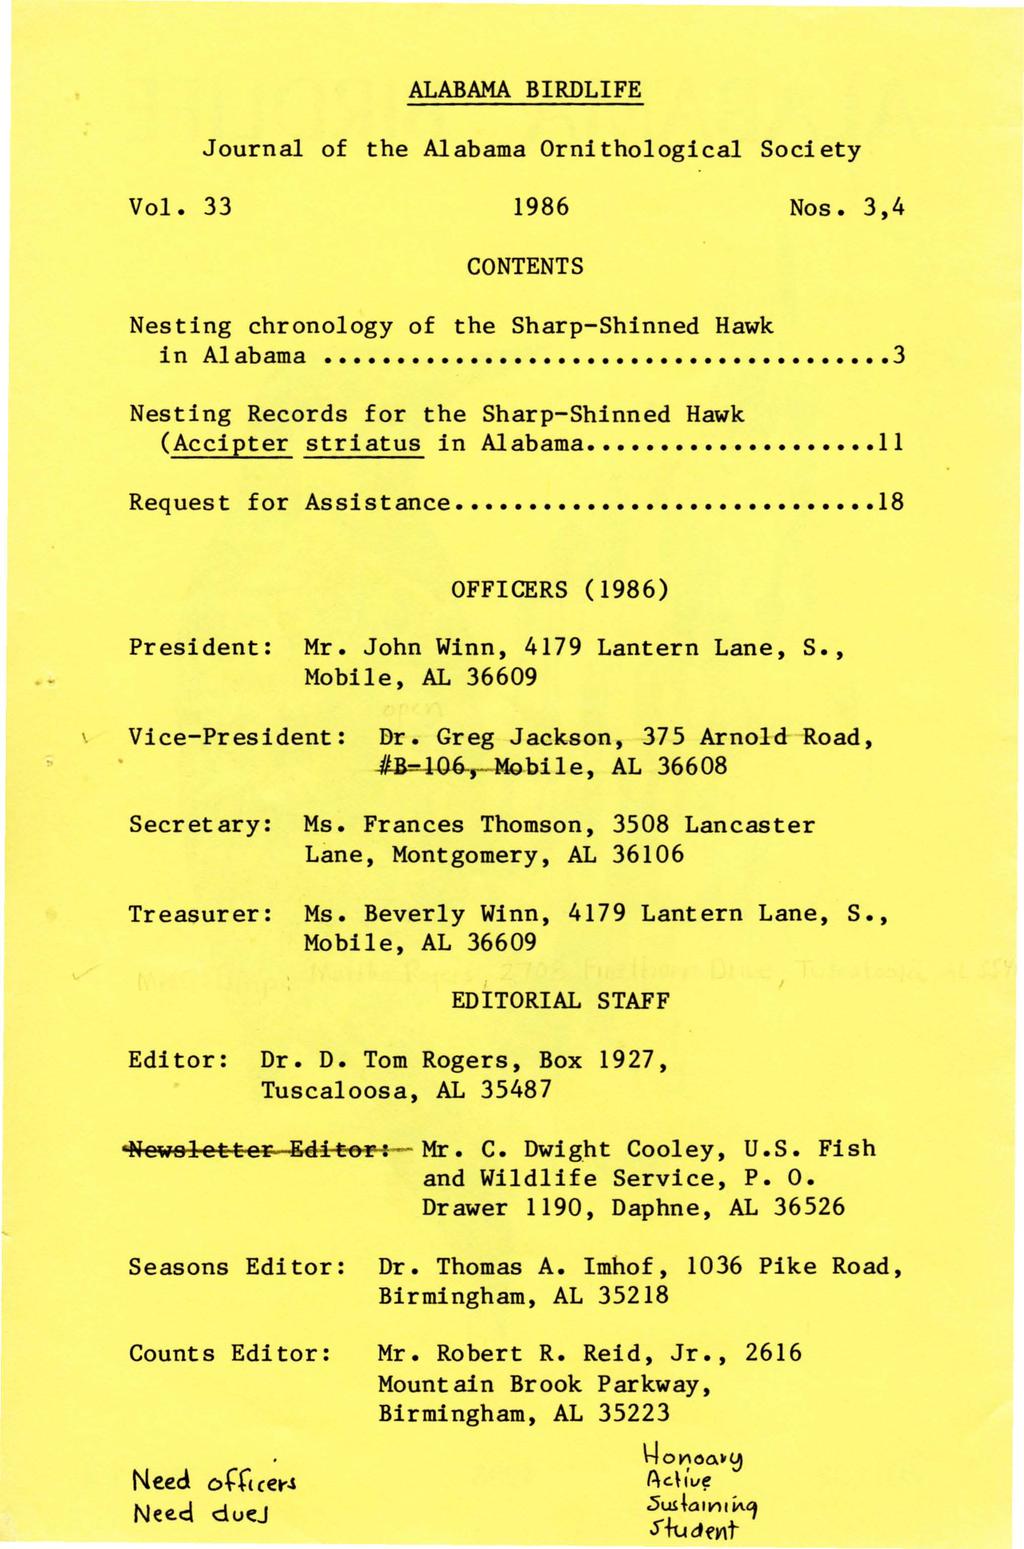 ALABAMA BIRDLIFE Journal of the Alabama Ornithological Society Vol. 33 1986 Nos. 3,4 CONTENTS Nesting chronology of the Sharp-Shinned Hawk in Alabama.